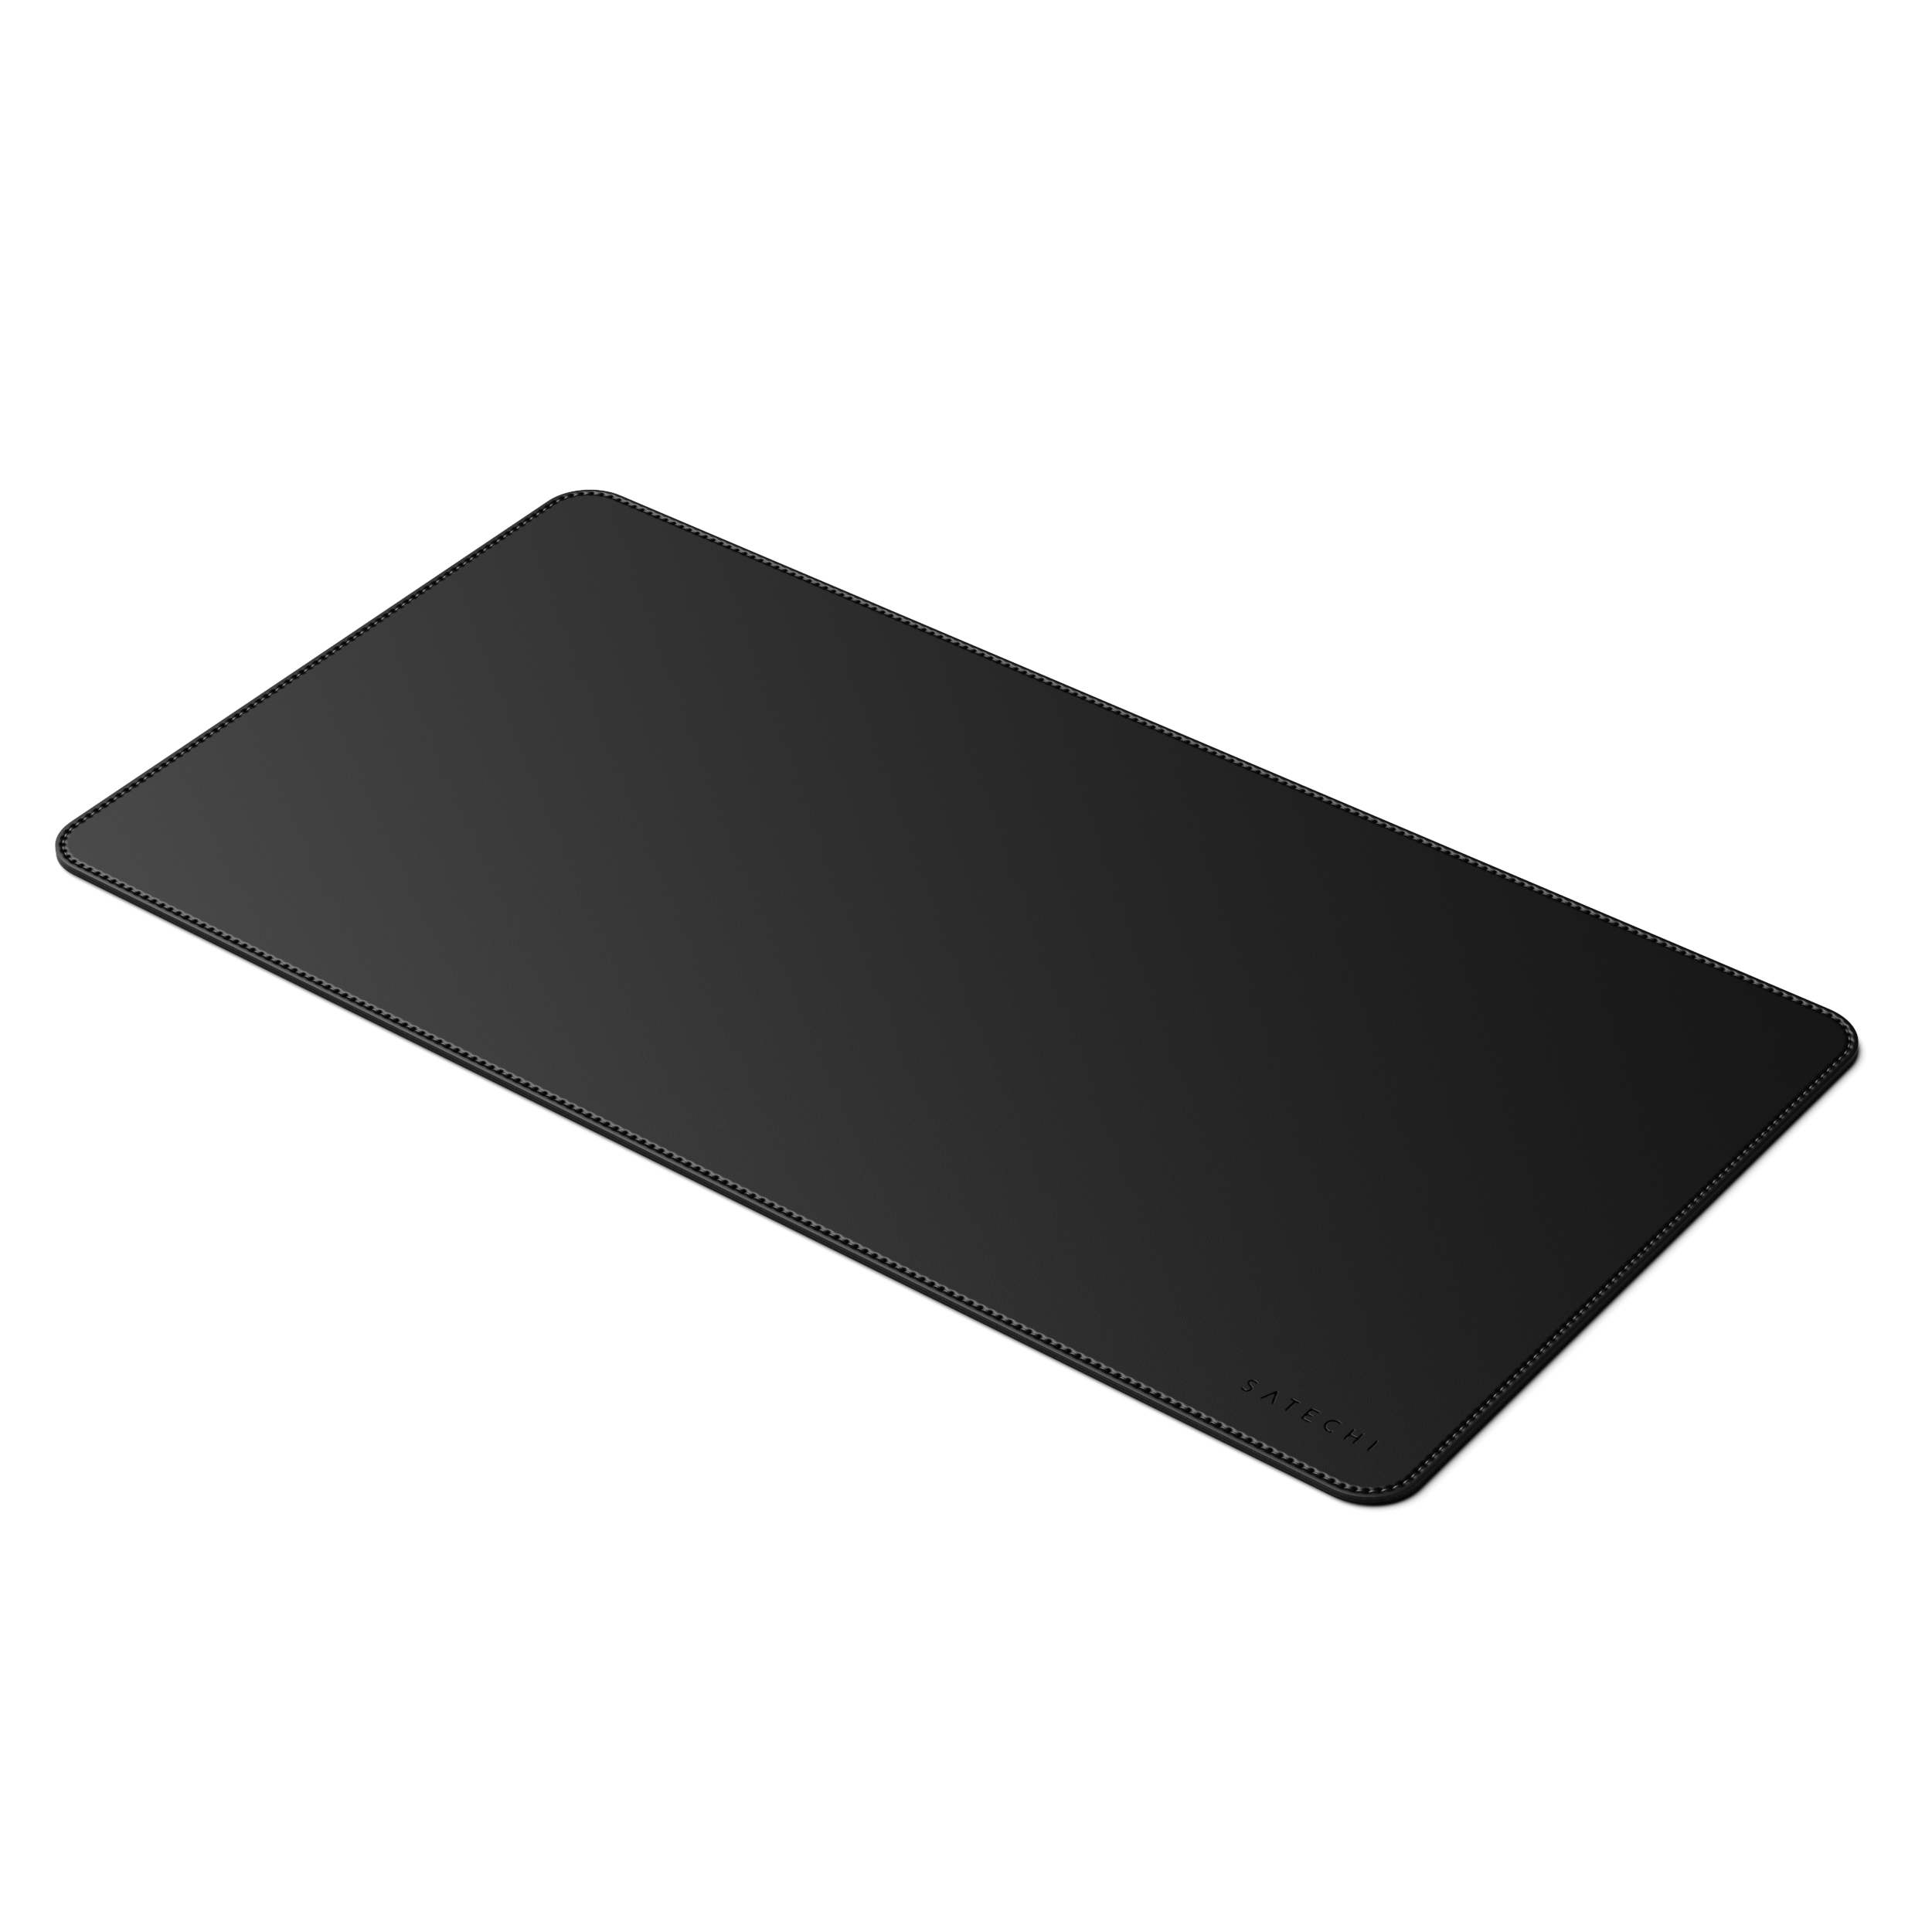 SATECHI Eco-Leather Deskmate - Black (31 58,42 Mousepad cm) x cm